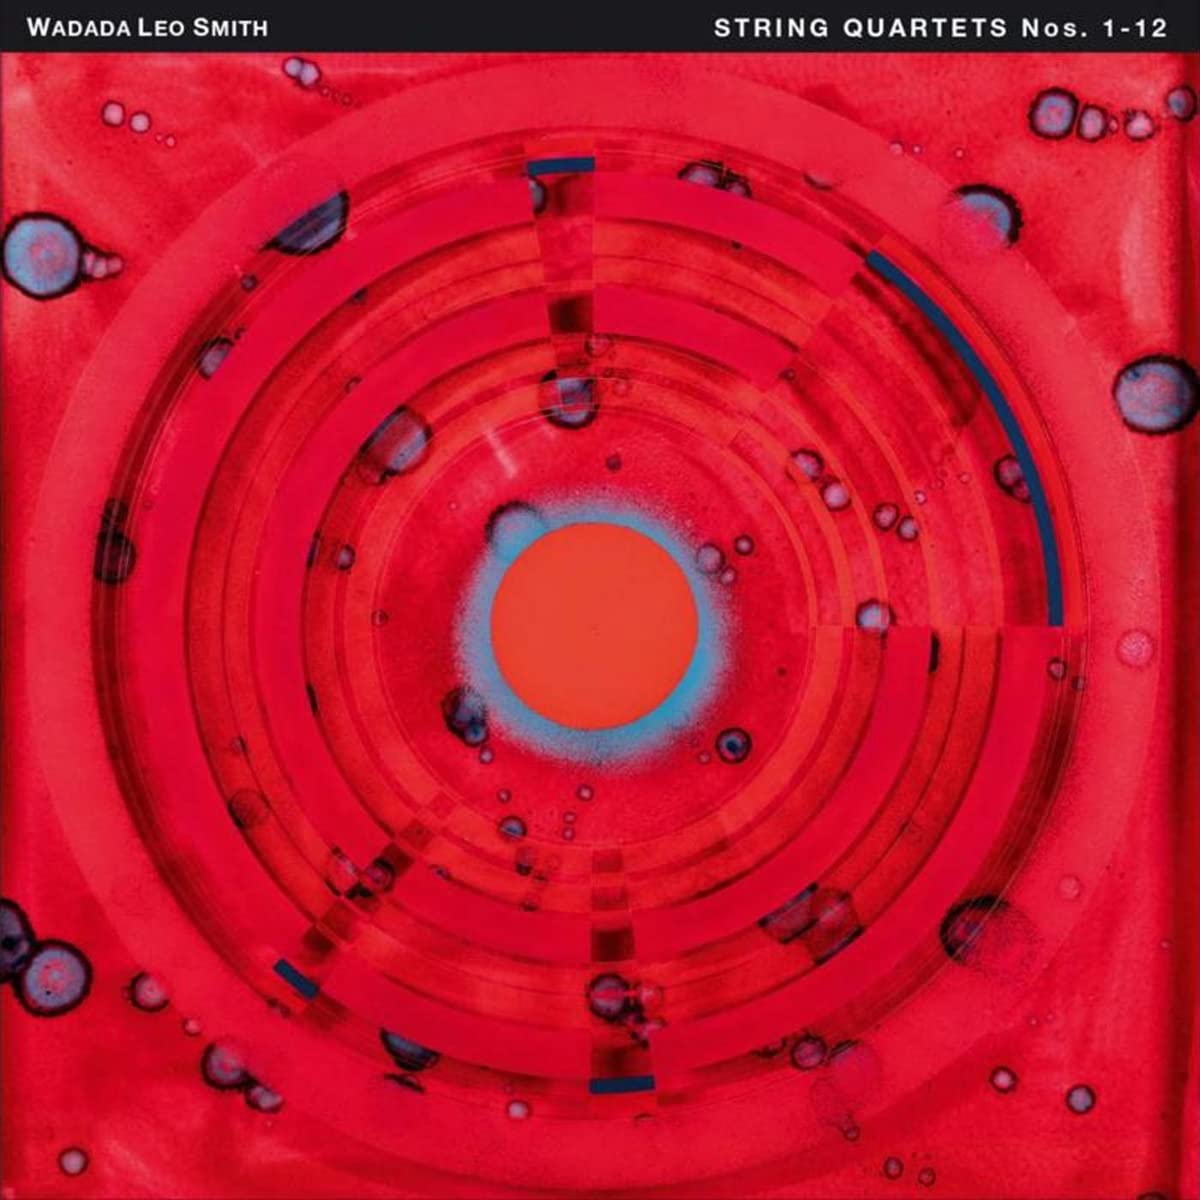 WADADA LEO SMITH - String Quartets Nos. 1-12 cover 